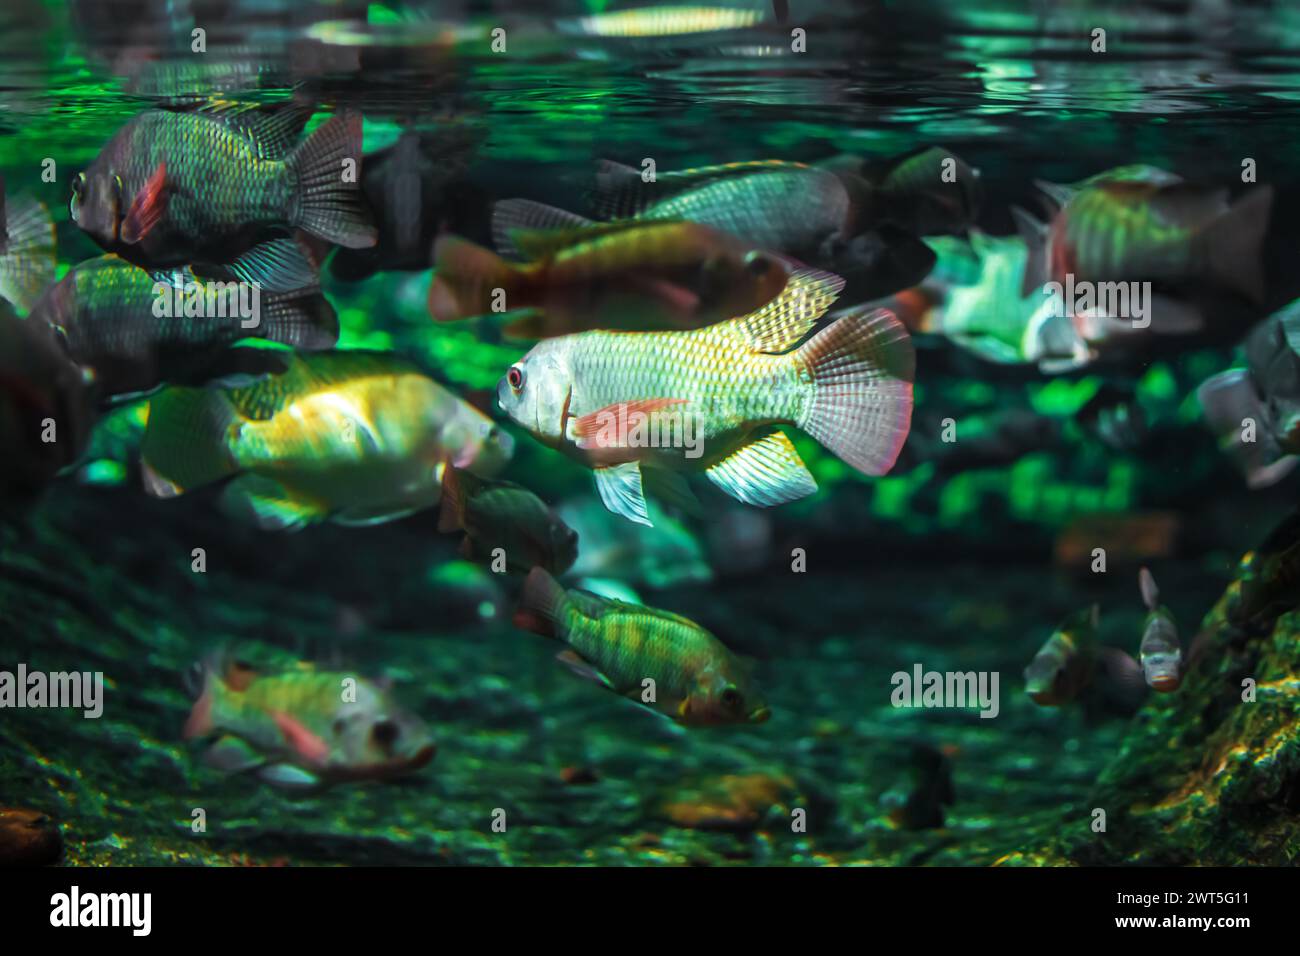 Tropical marine fish in natural habitat. Oceanarium, wildlife, colorful underwater world, aquarium. Stock Photo